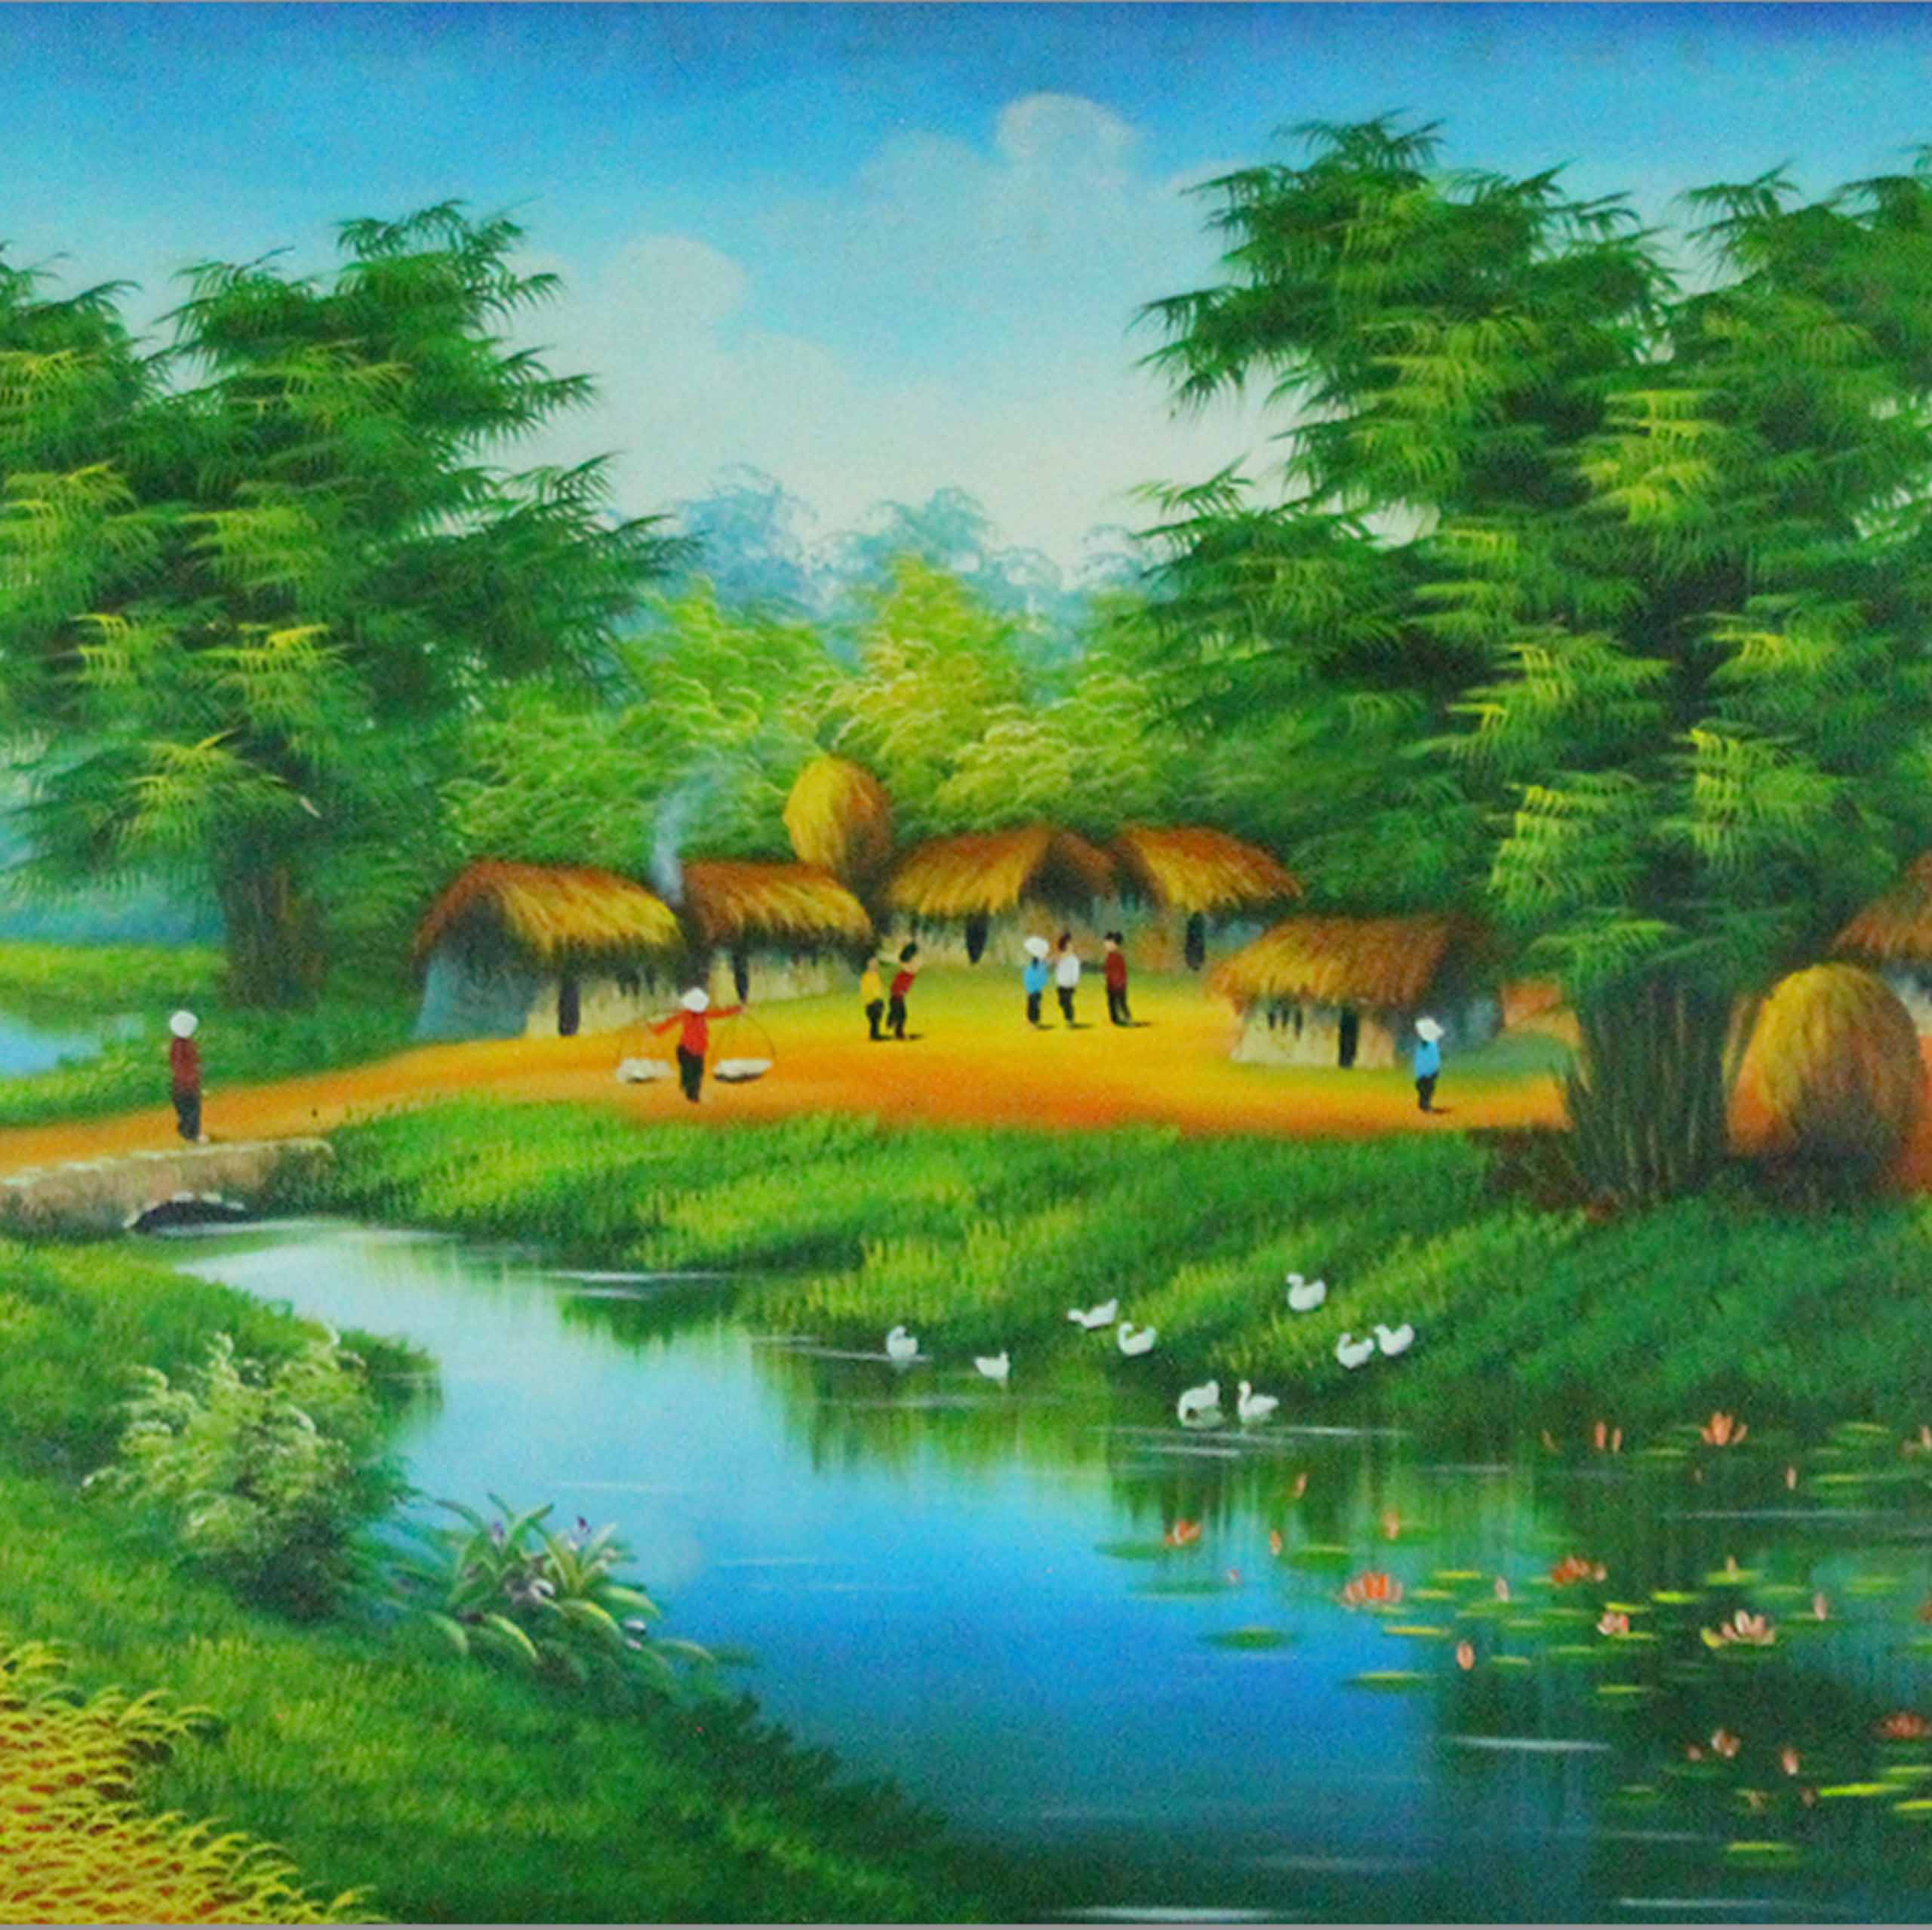 Tranh sơn dầu làng quê Việt Nam - TSD49LHAR